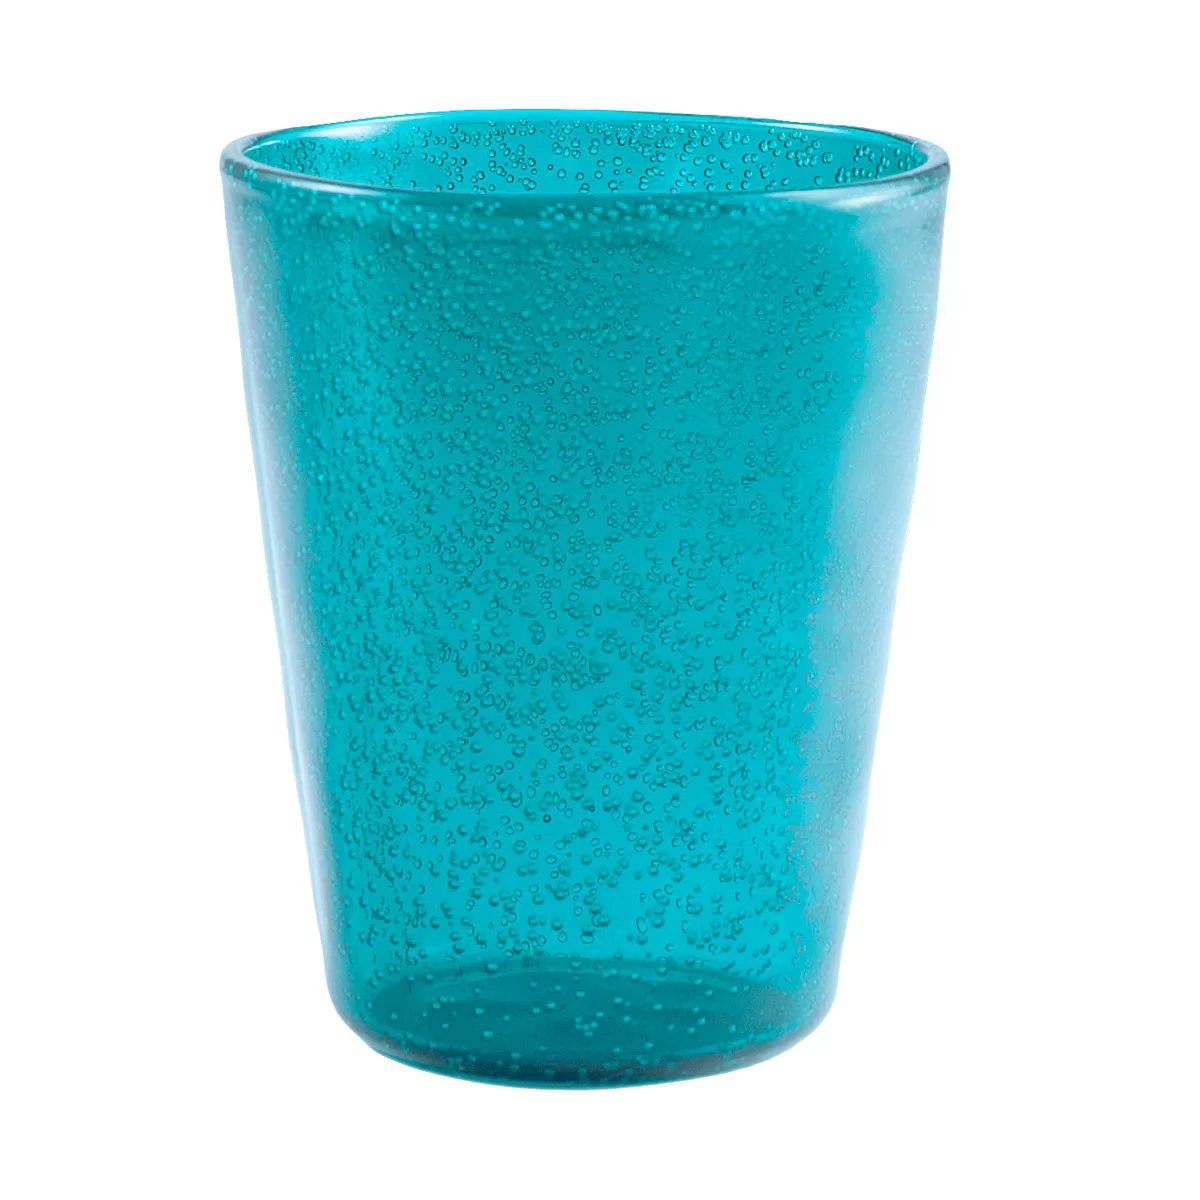 Memento Synth Glass bicchiere acqua - Turquoise - Gasparetto 1945